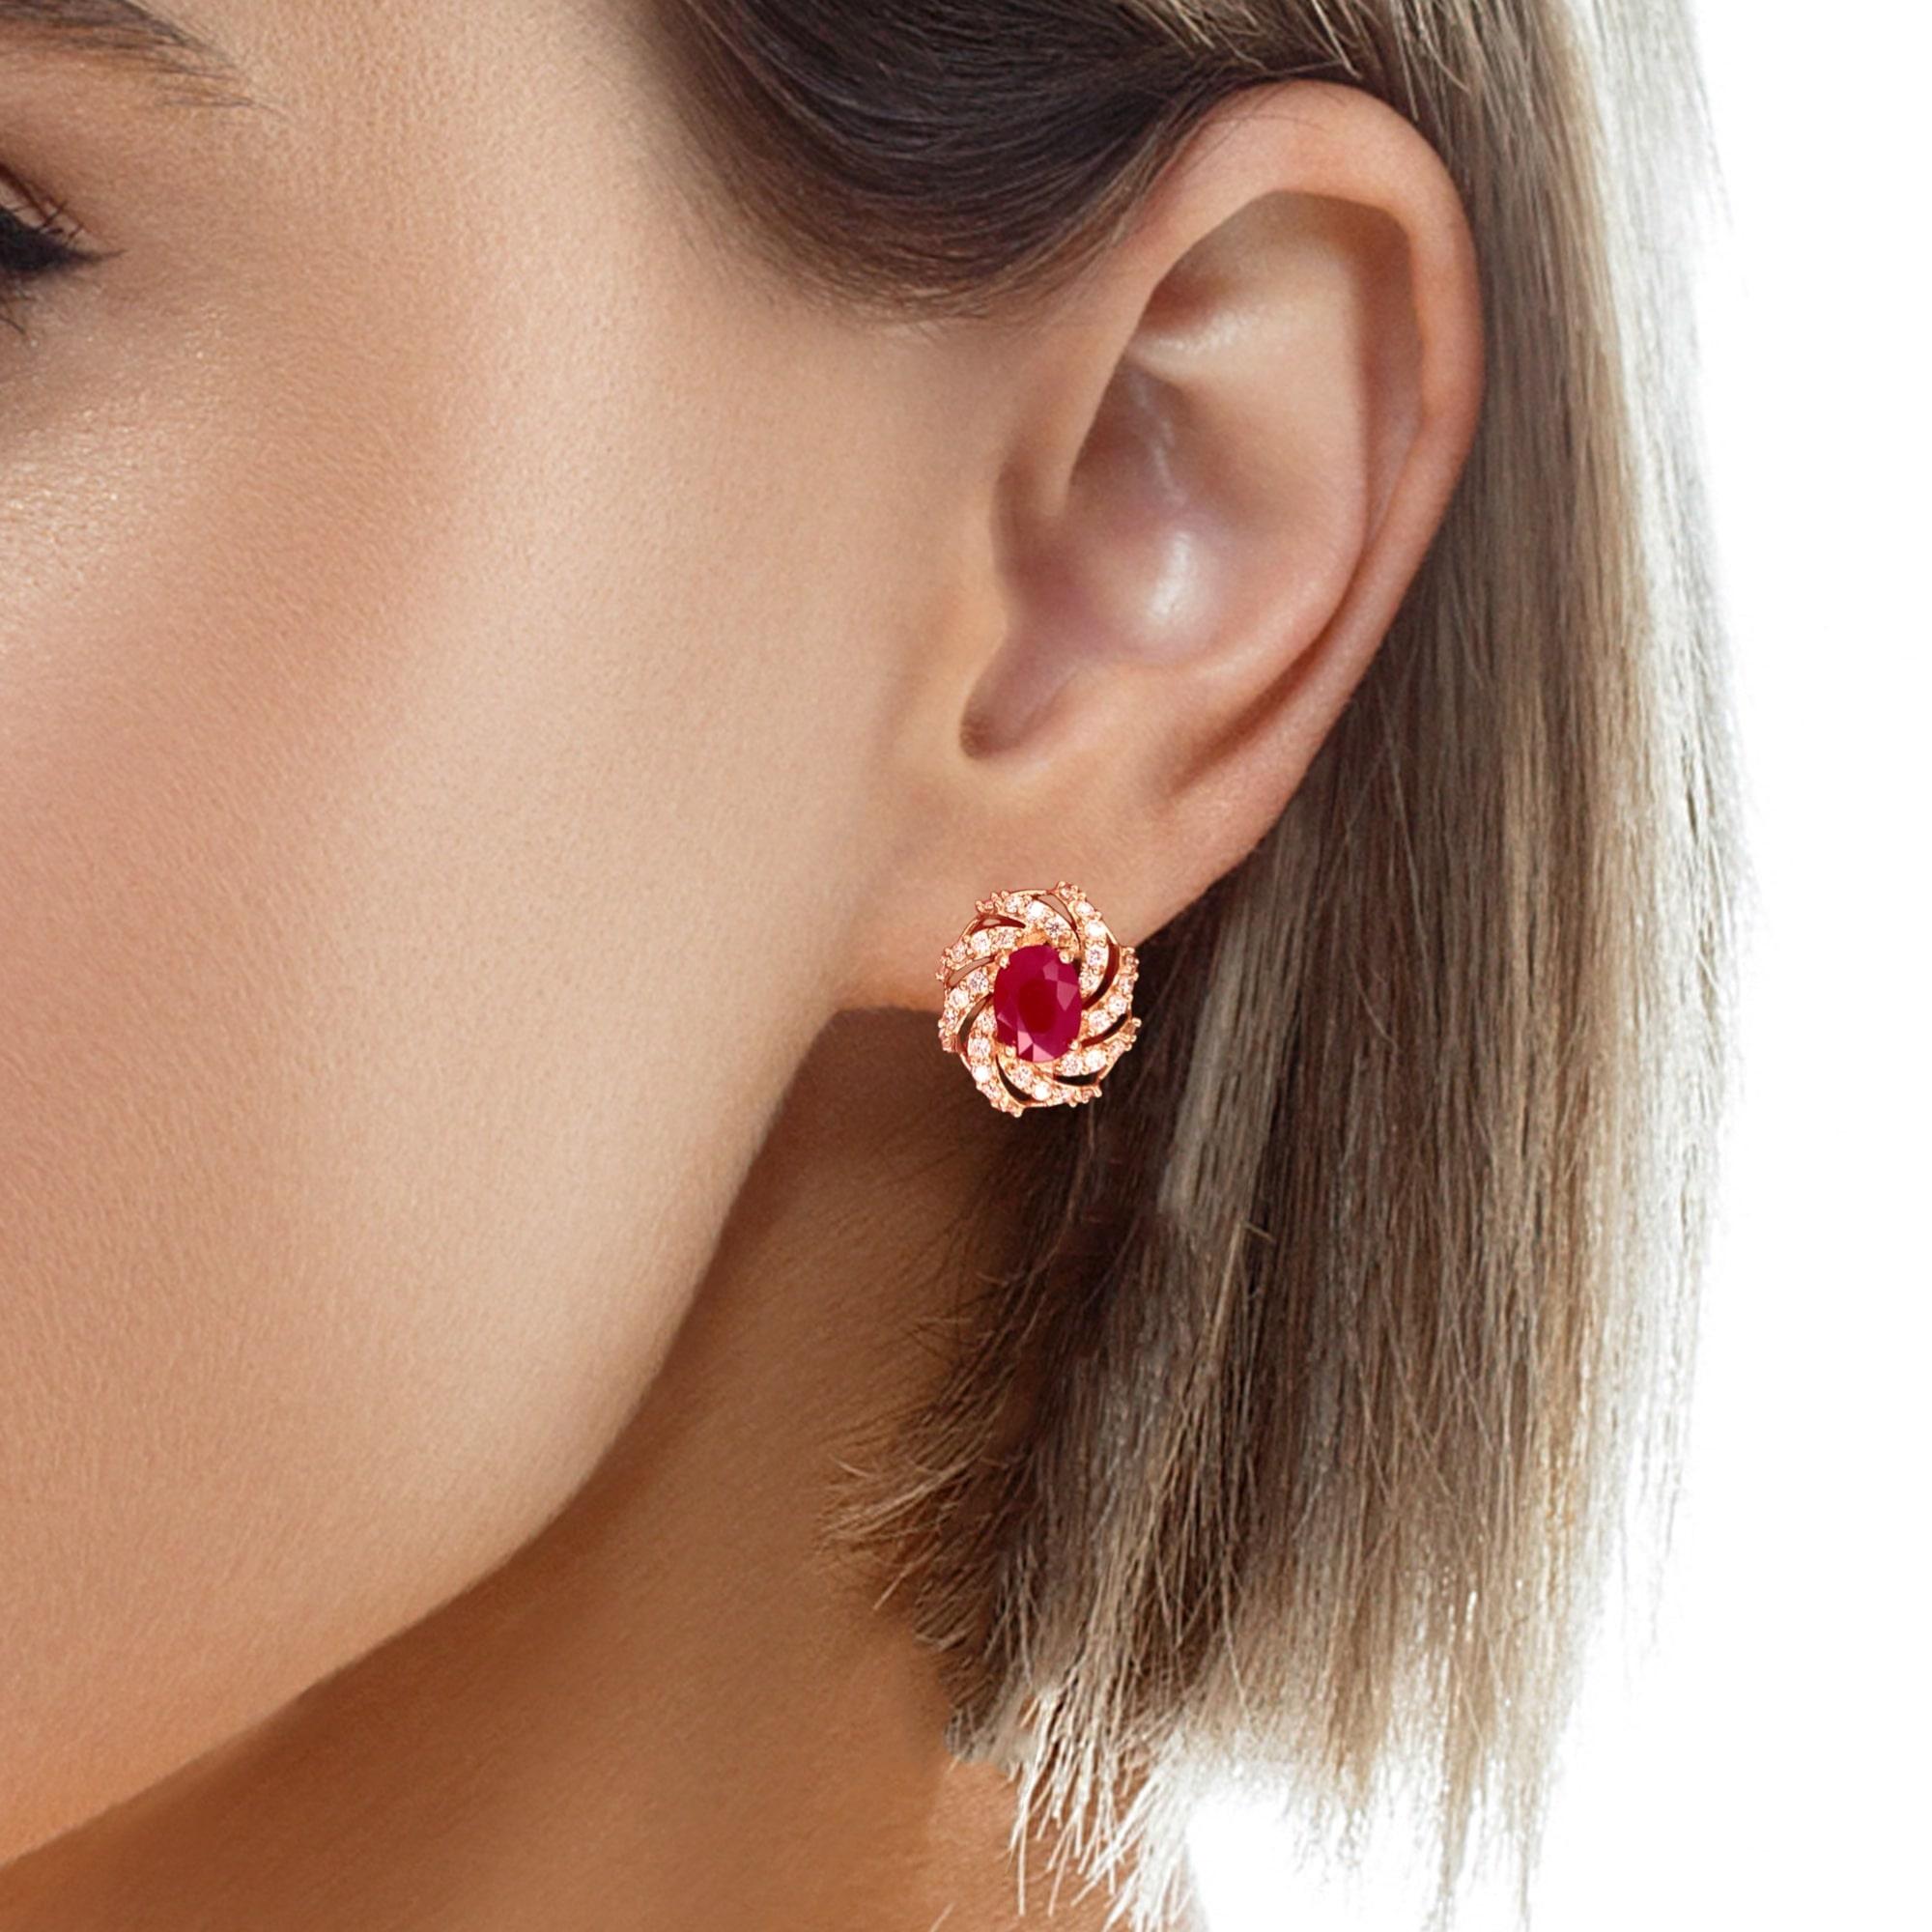 Oval Cut Diamond Ruby Earrings 14 Karat Yellow Gold 3.64 TCW Certified For Sale